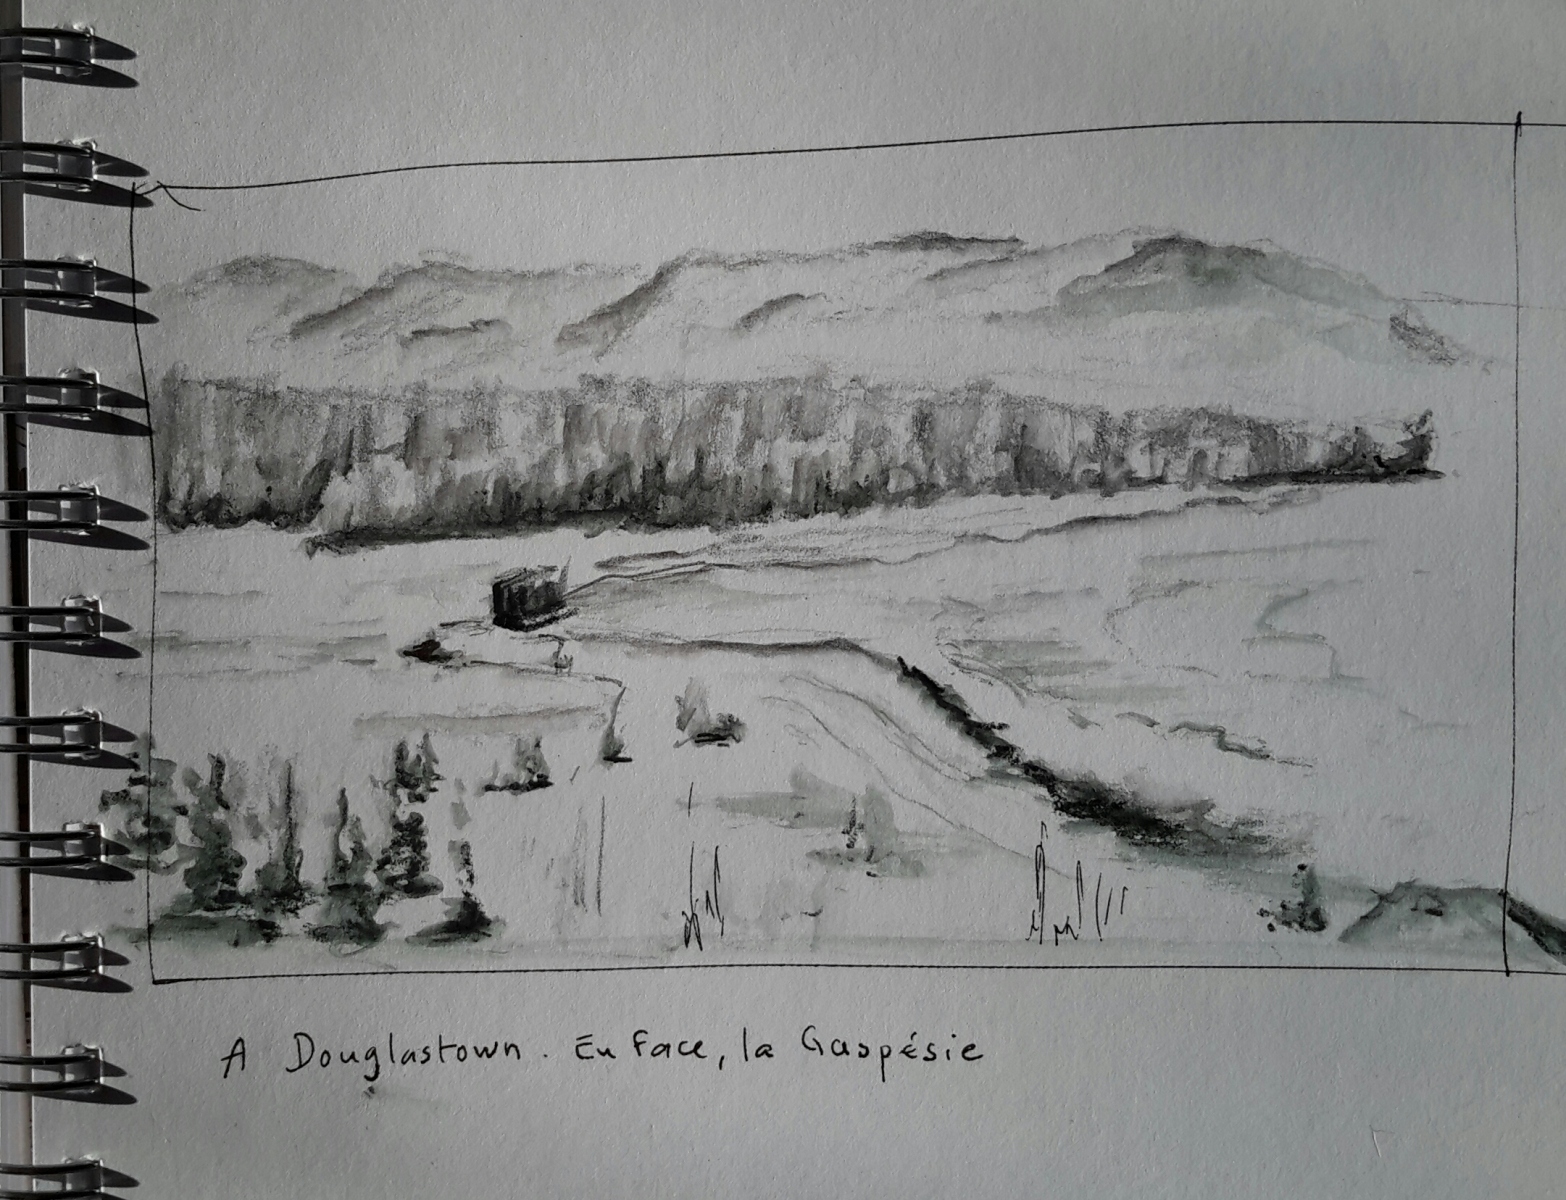 La Gaspésie - A l'auberge de Douglastown